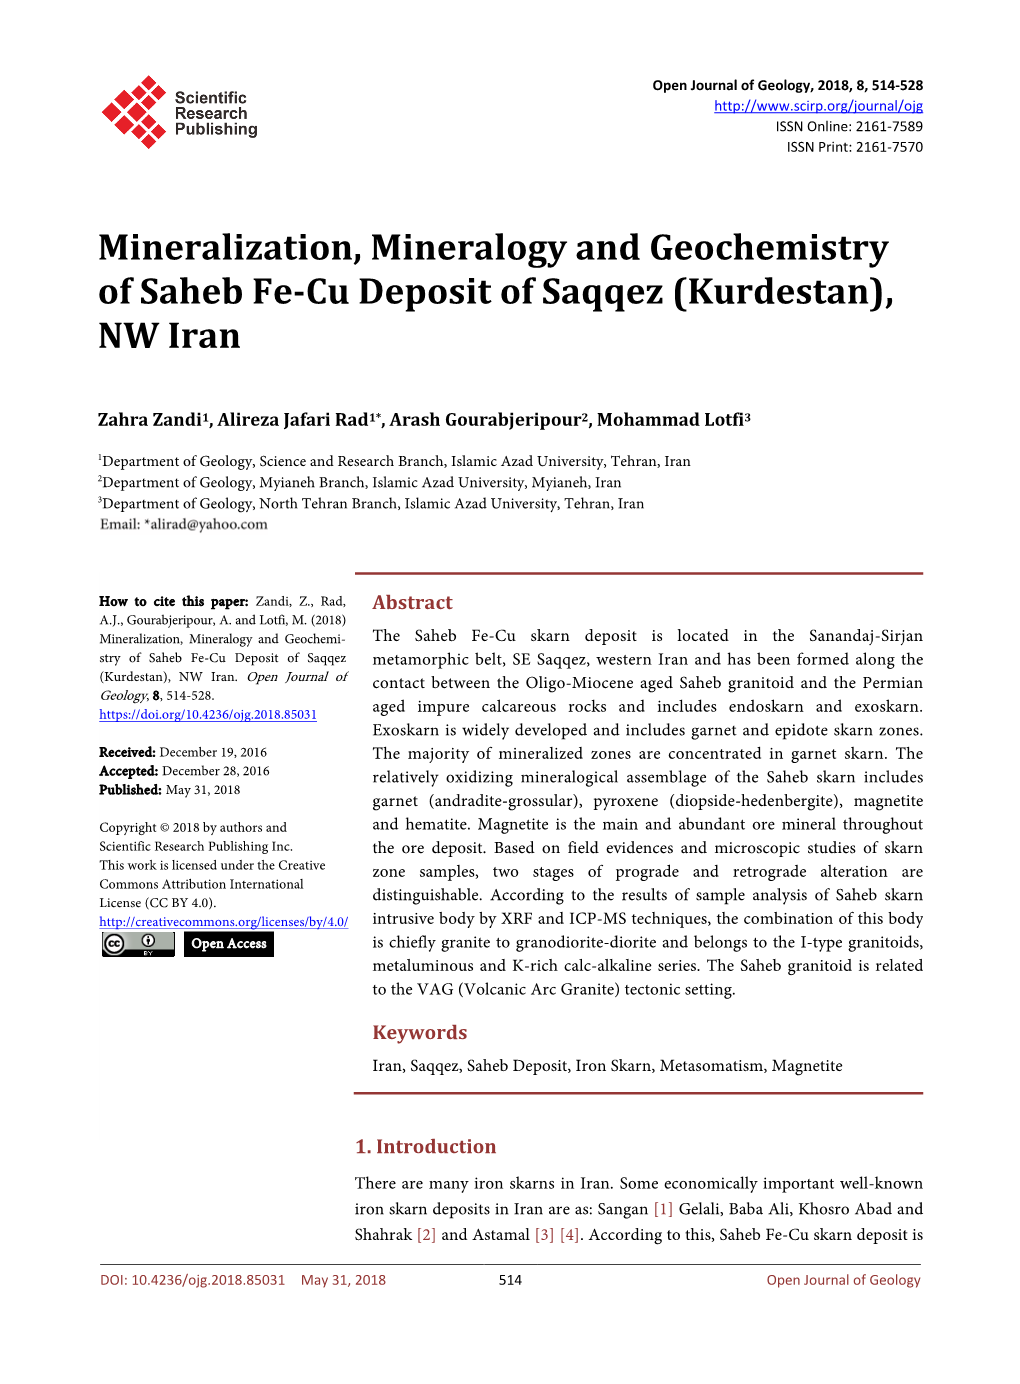 Mineralization, Mineralogy and Geochemistry of Saheb Fe-Cu Deposit of Saqqez (Kurdestan), NW Iran